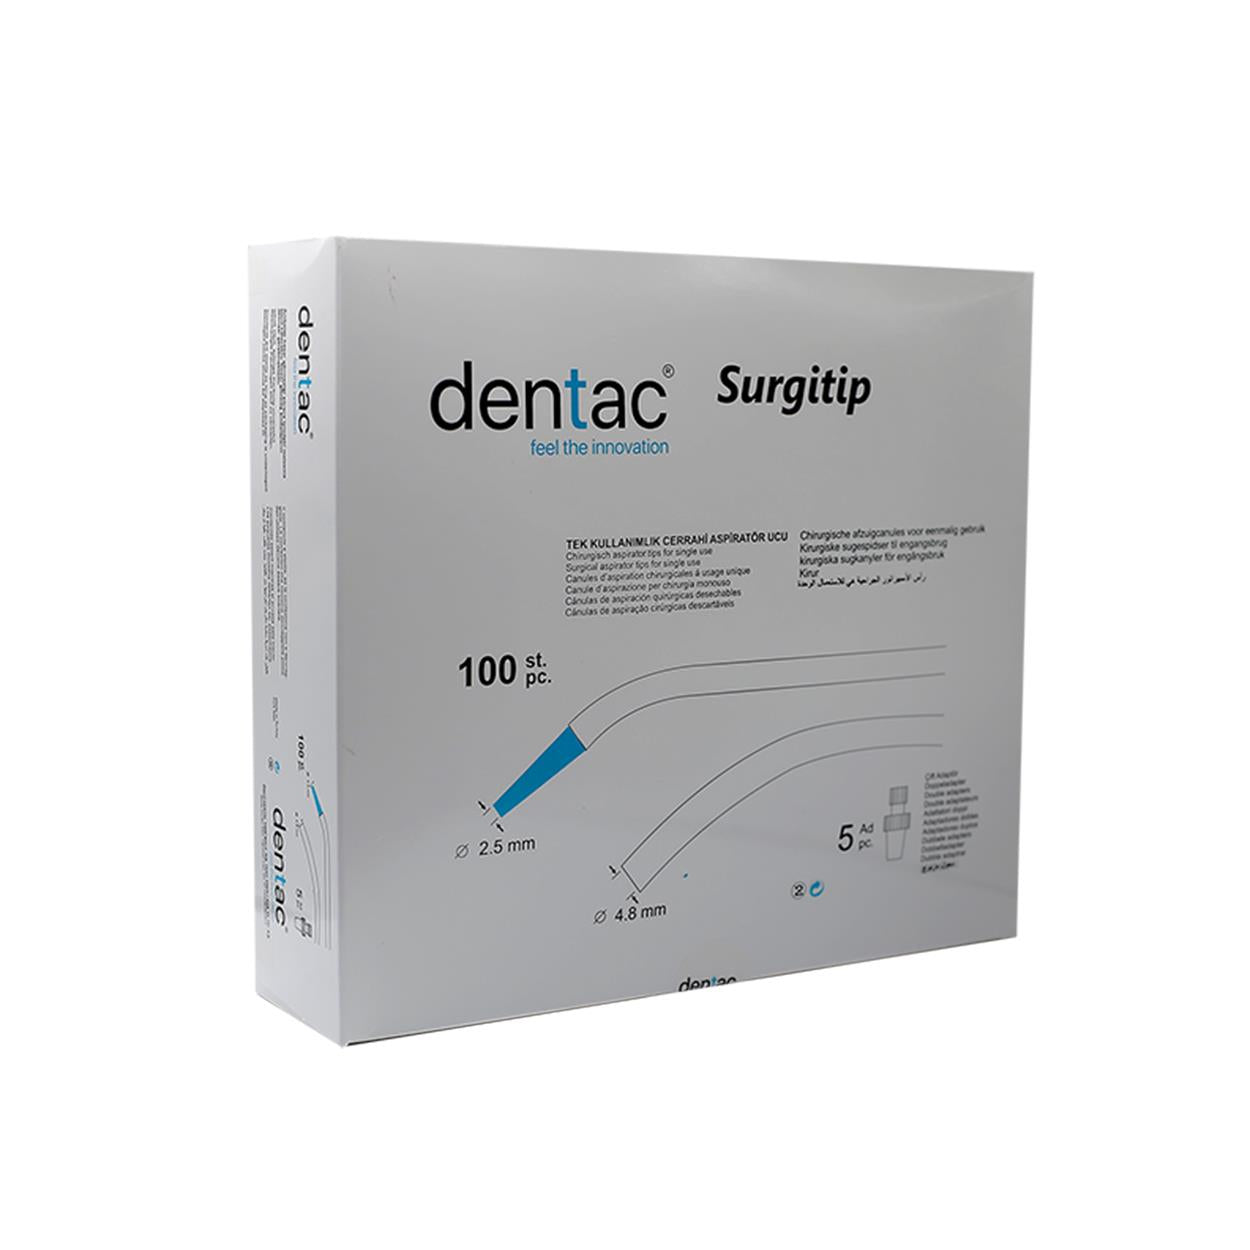 DentrealStore - Dentac Disposable Surgical Aspirator Tip - Surgitip